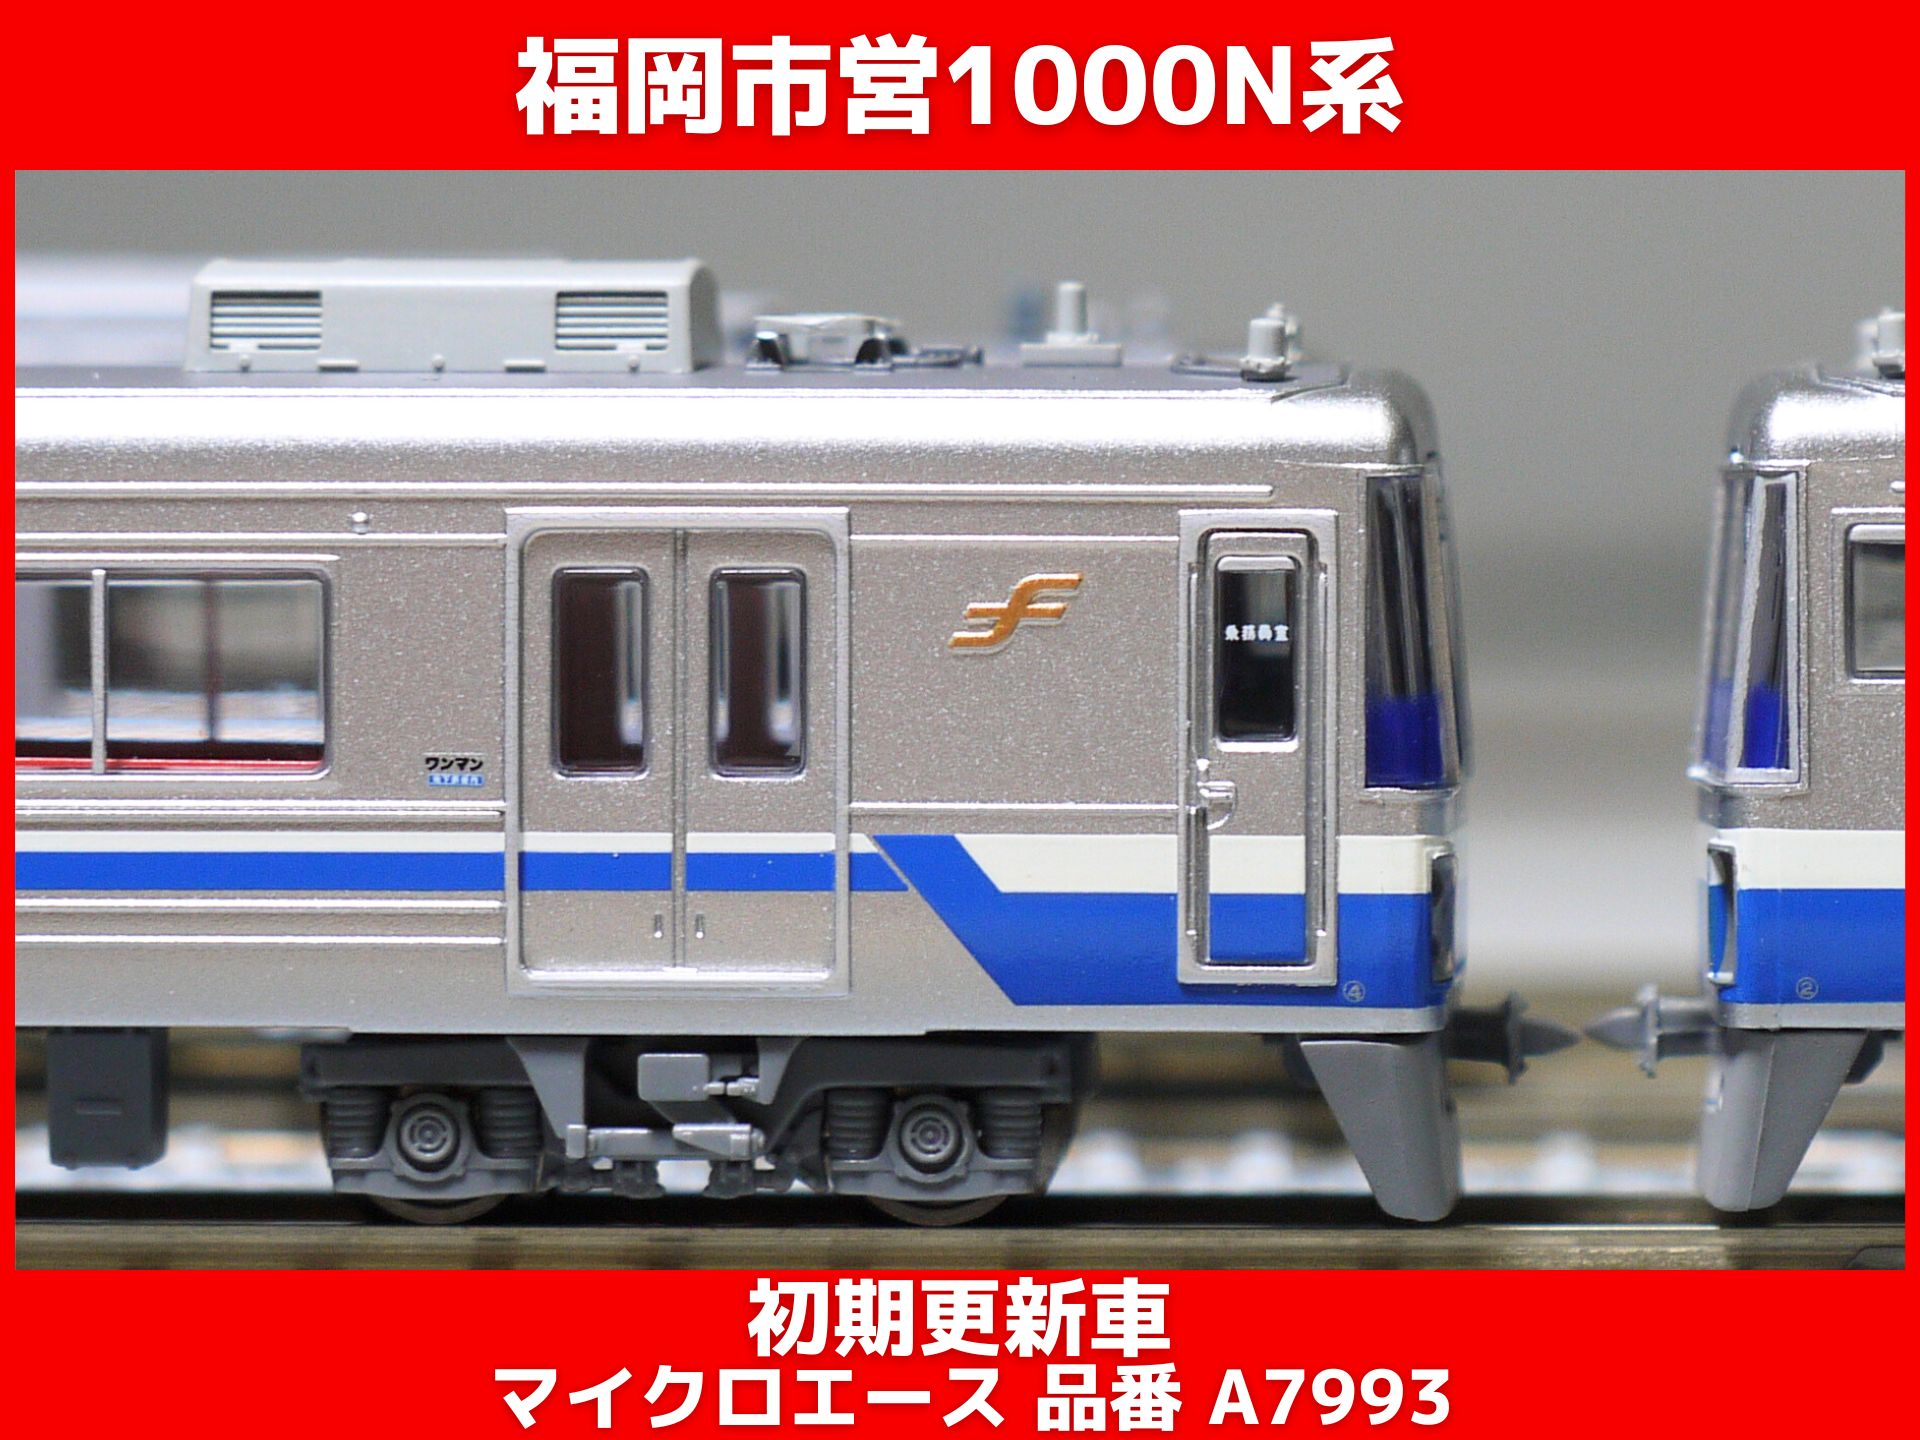 マイクロエース A-7995福岡市地下鉄 1000N系 後期更新車 6両 - 鉄道模型